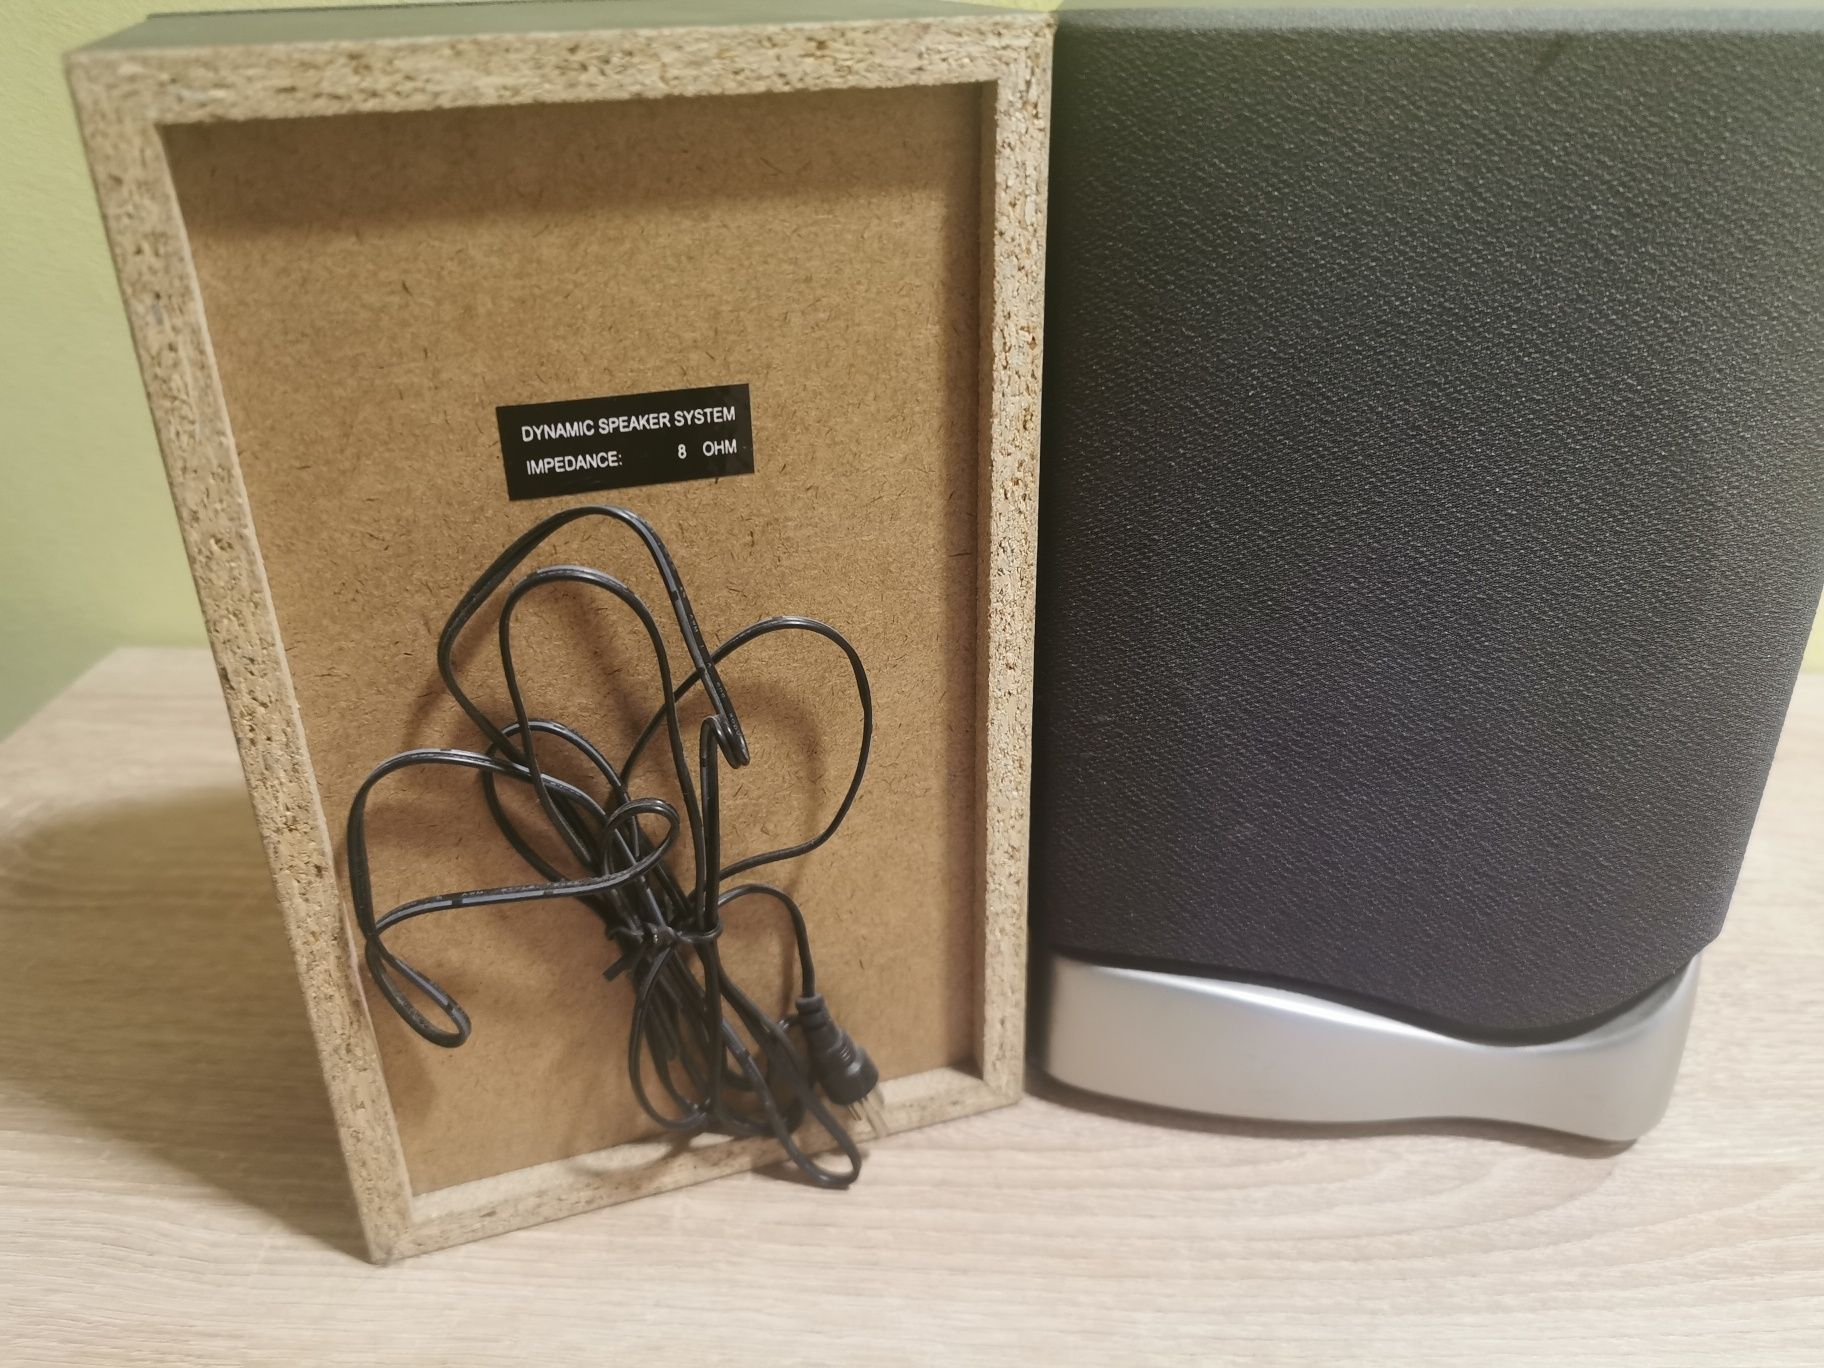 Komplet głośników dynamicznych Dynamic Speaker System 8 ohm 8Om